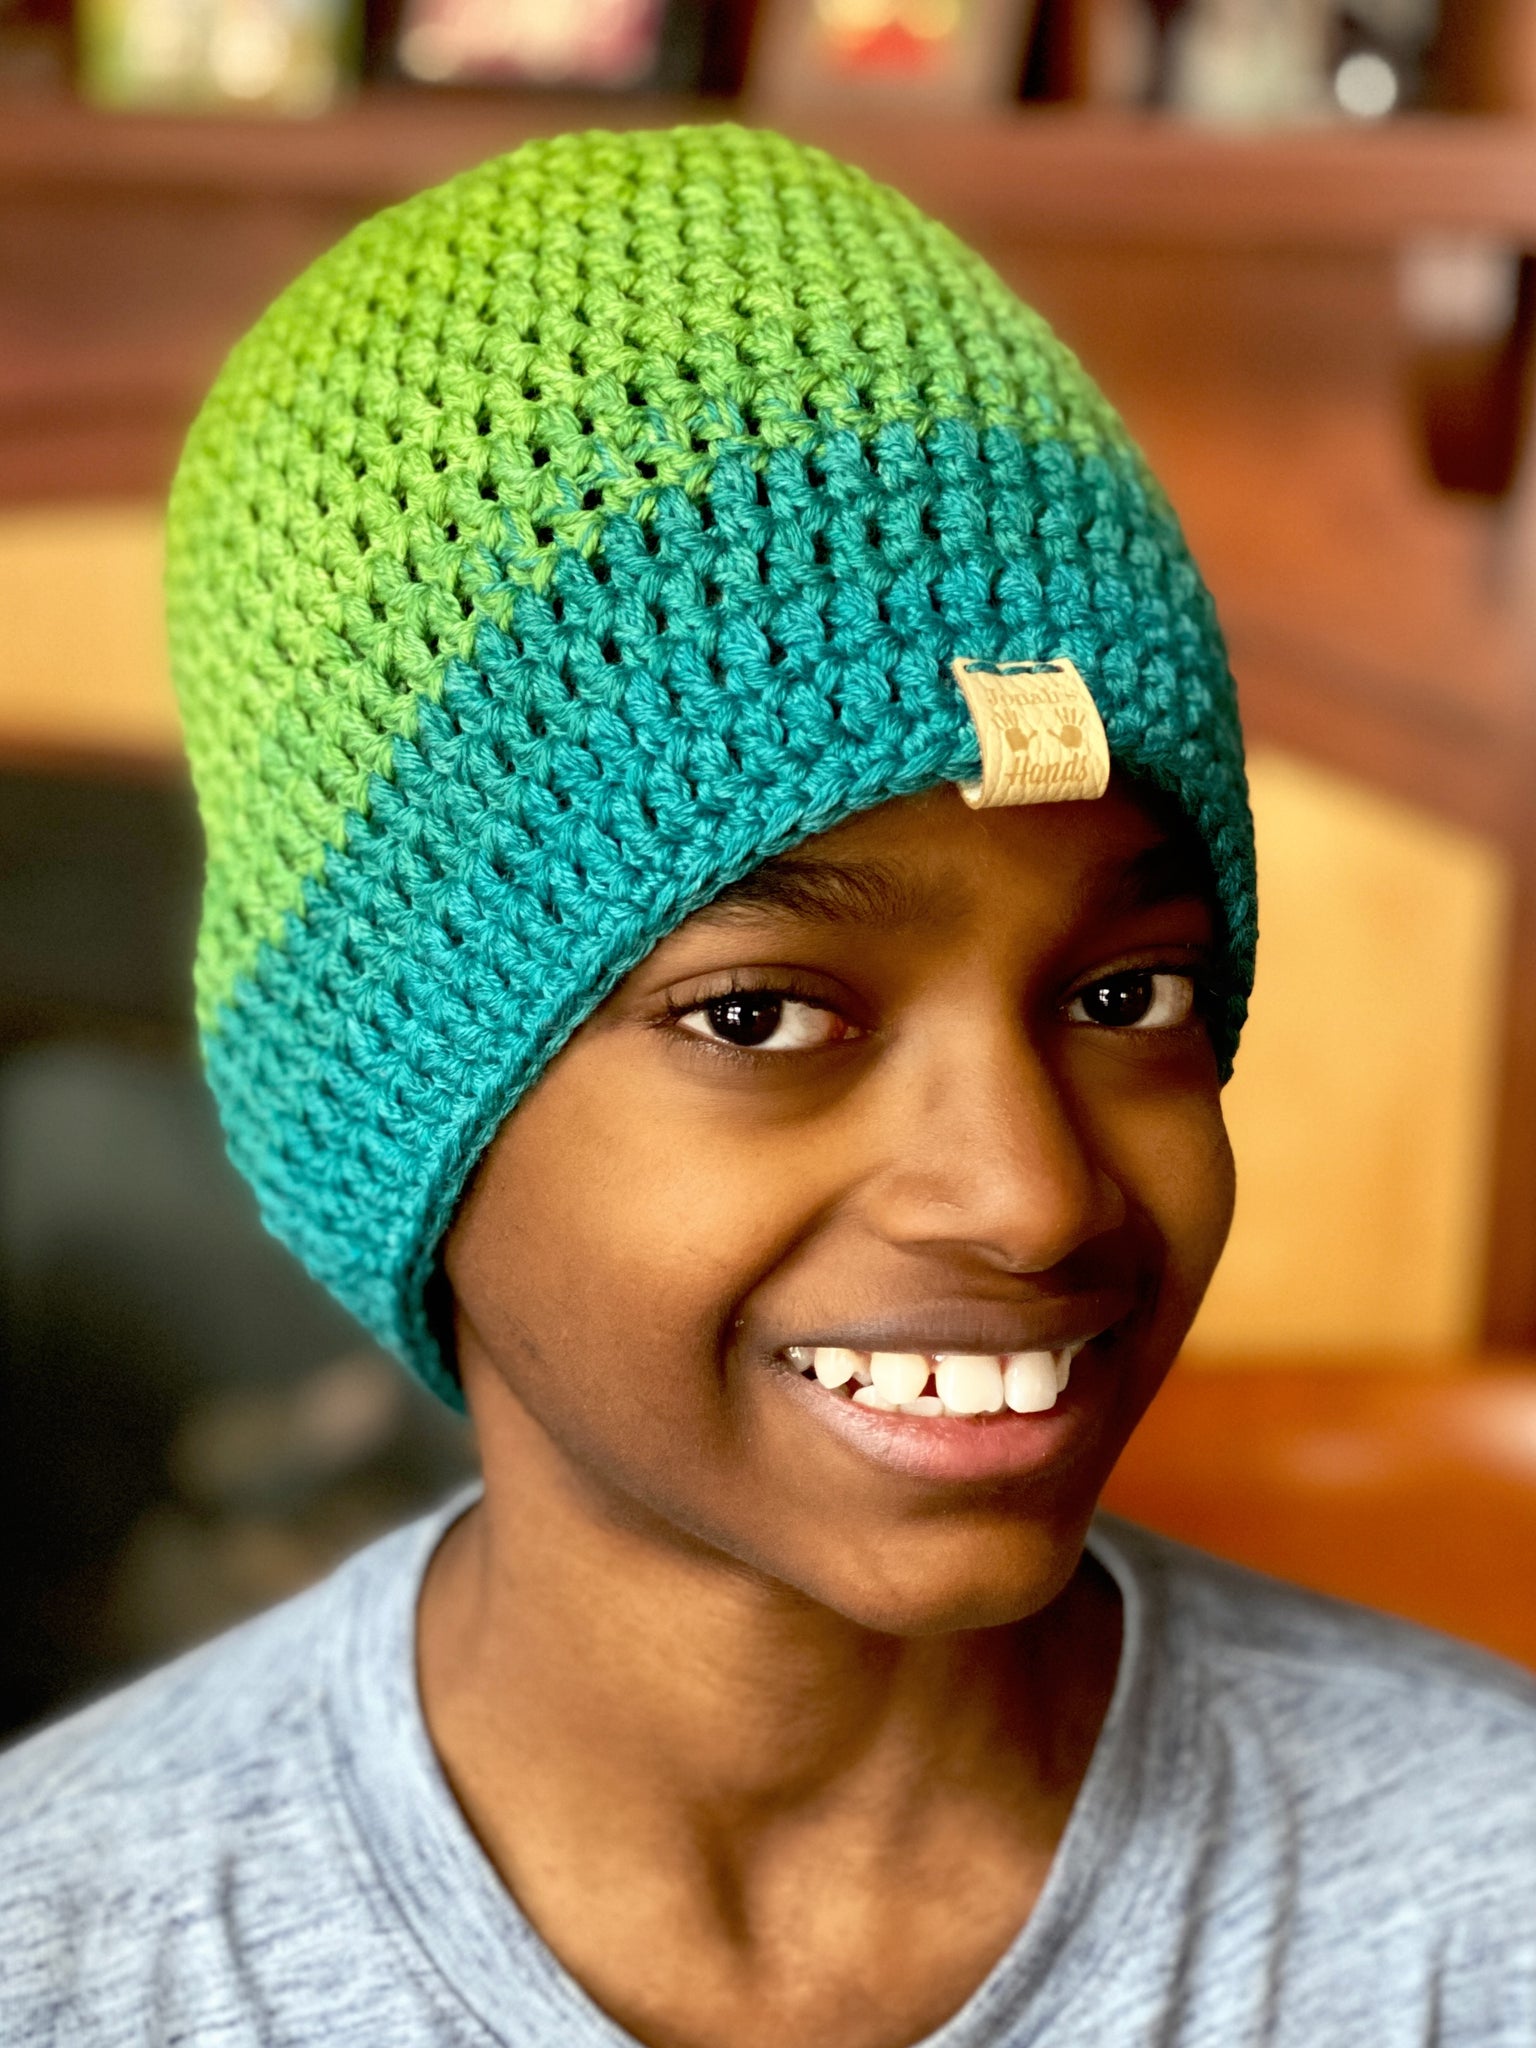 Jonah's Hands Hat Loom Knitting Kit